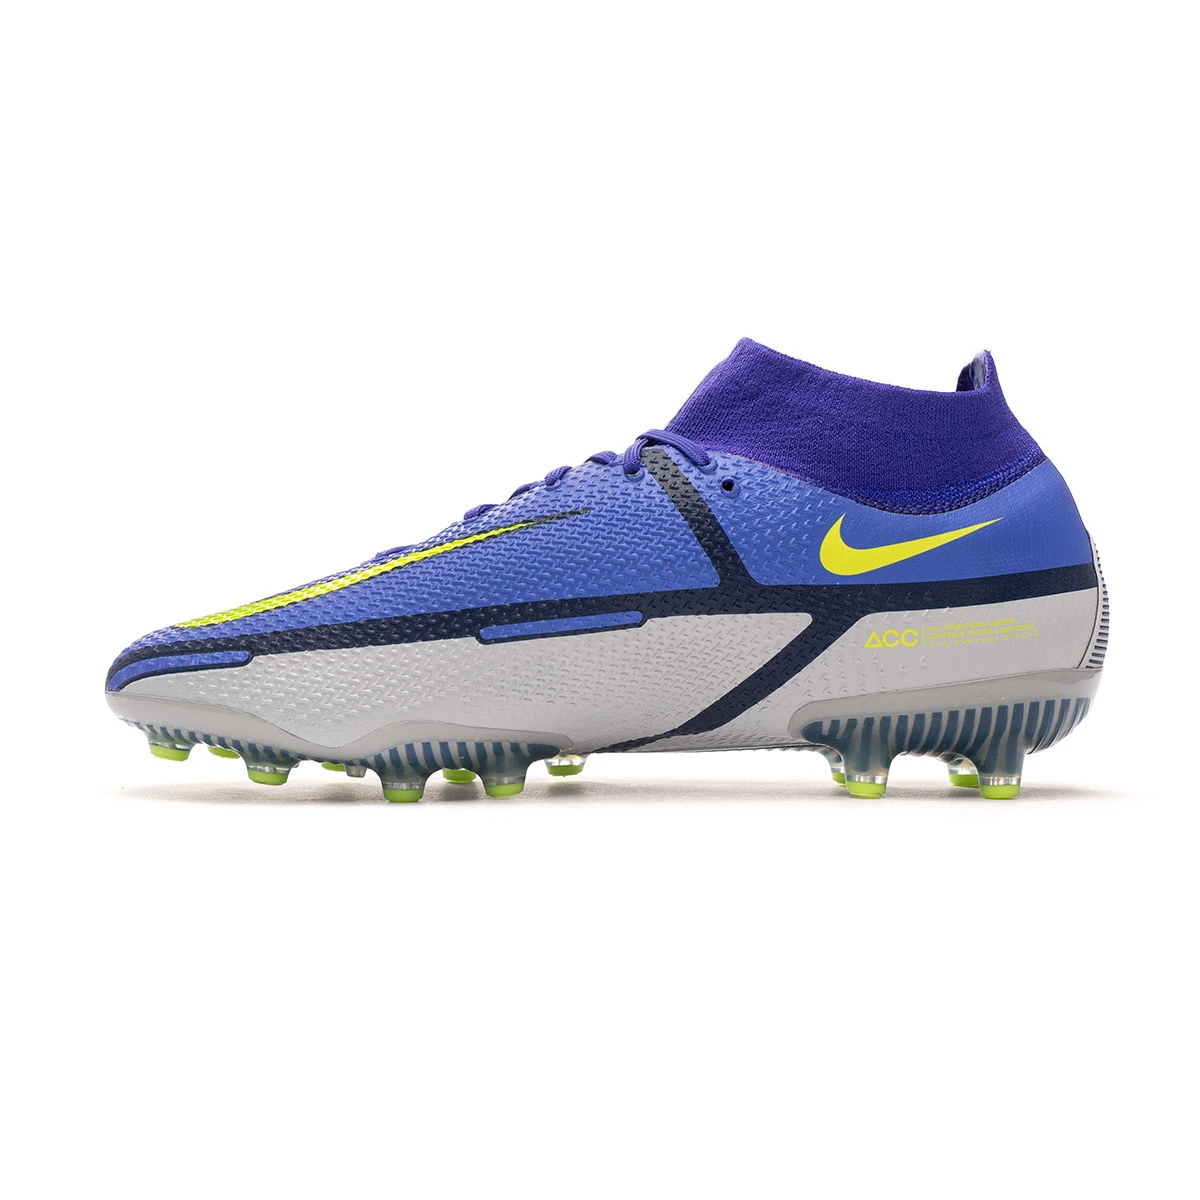 Futebol, Chuteiras De Futebol Para Relva Artificial Mercurial Vapor 14  Elite Ag Sapphire/Azul Void/Volt - Nike Homem